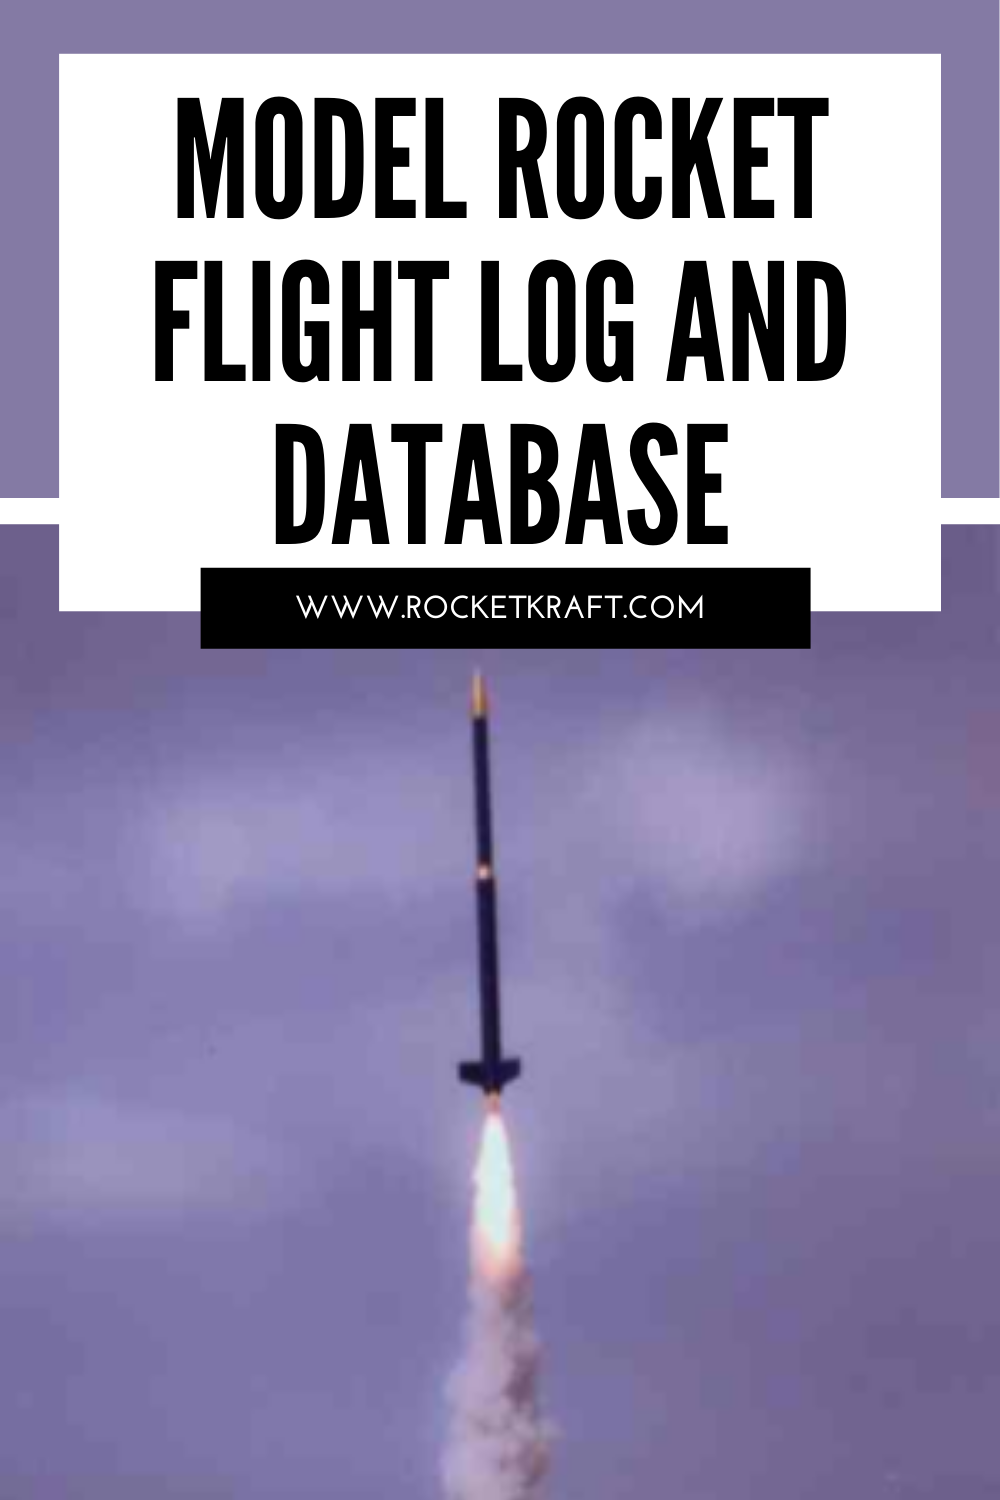 Model Rocket Flight Log Software v2.7